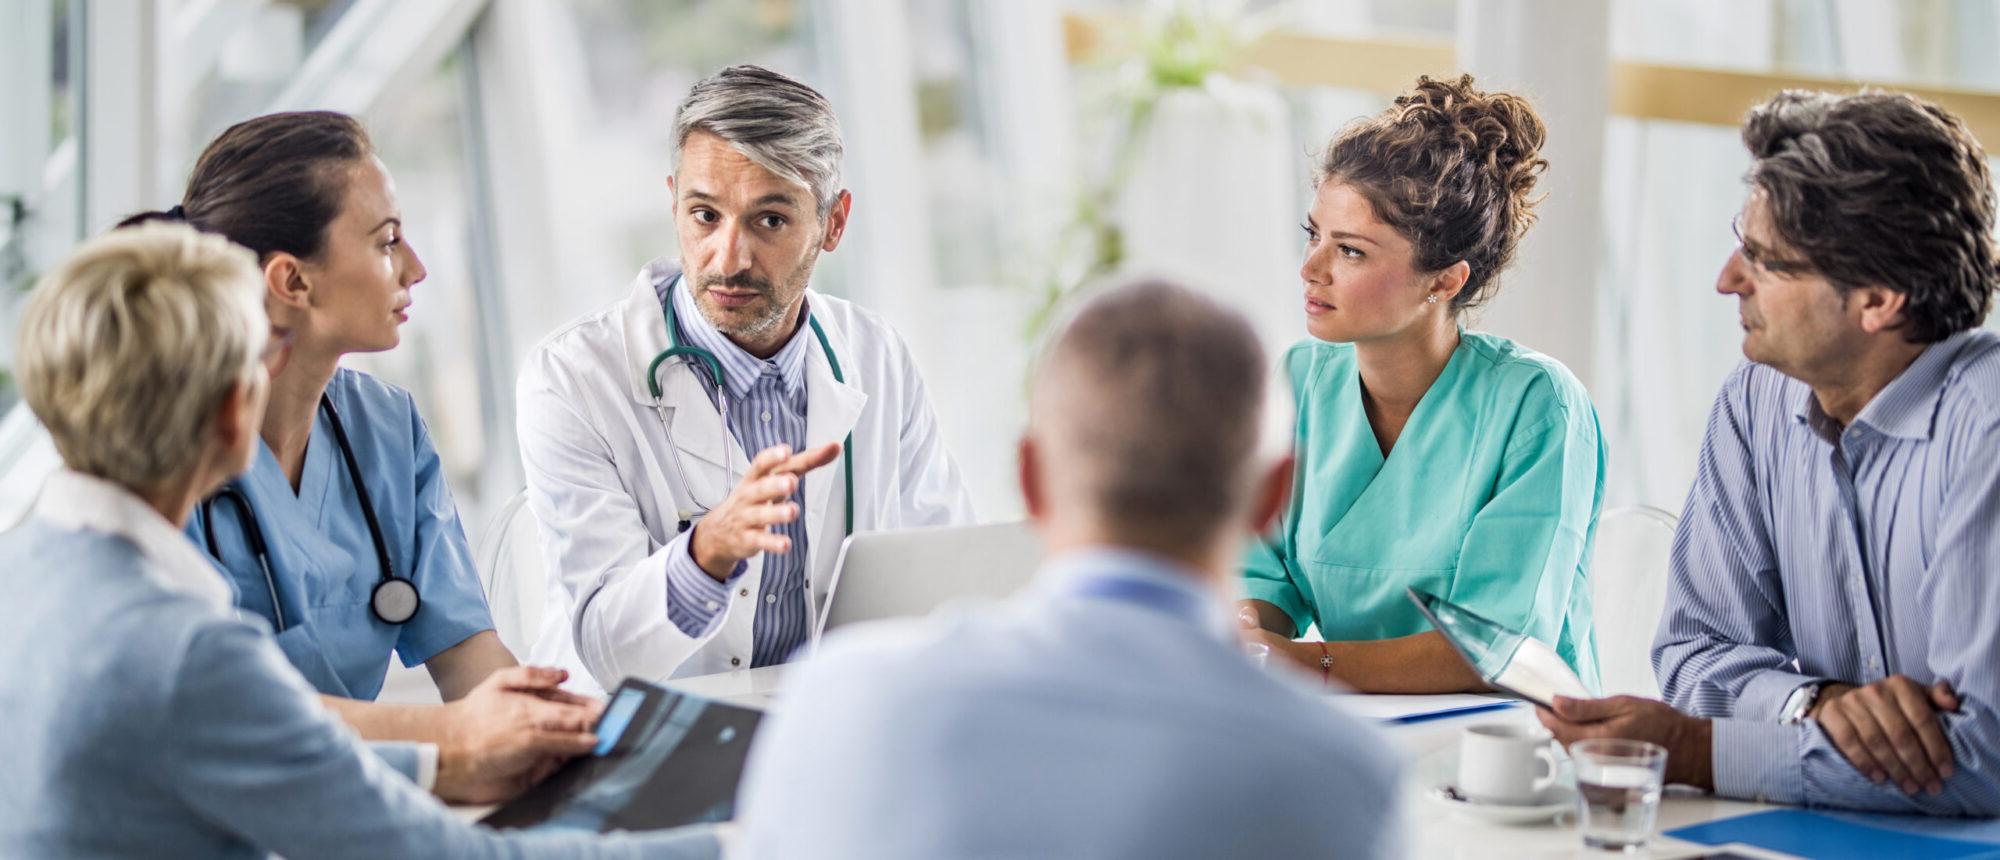 医生和他的同事在医院开会时与一组商务人士交谈.